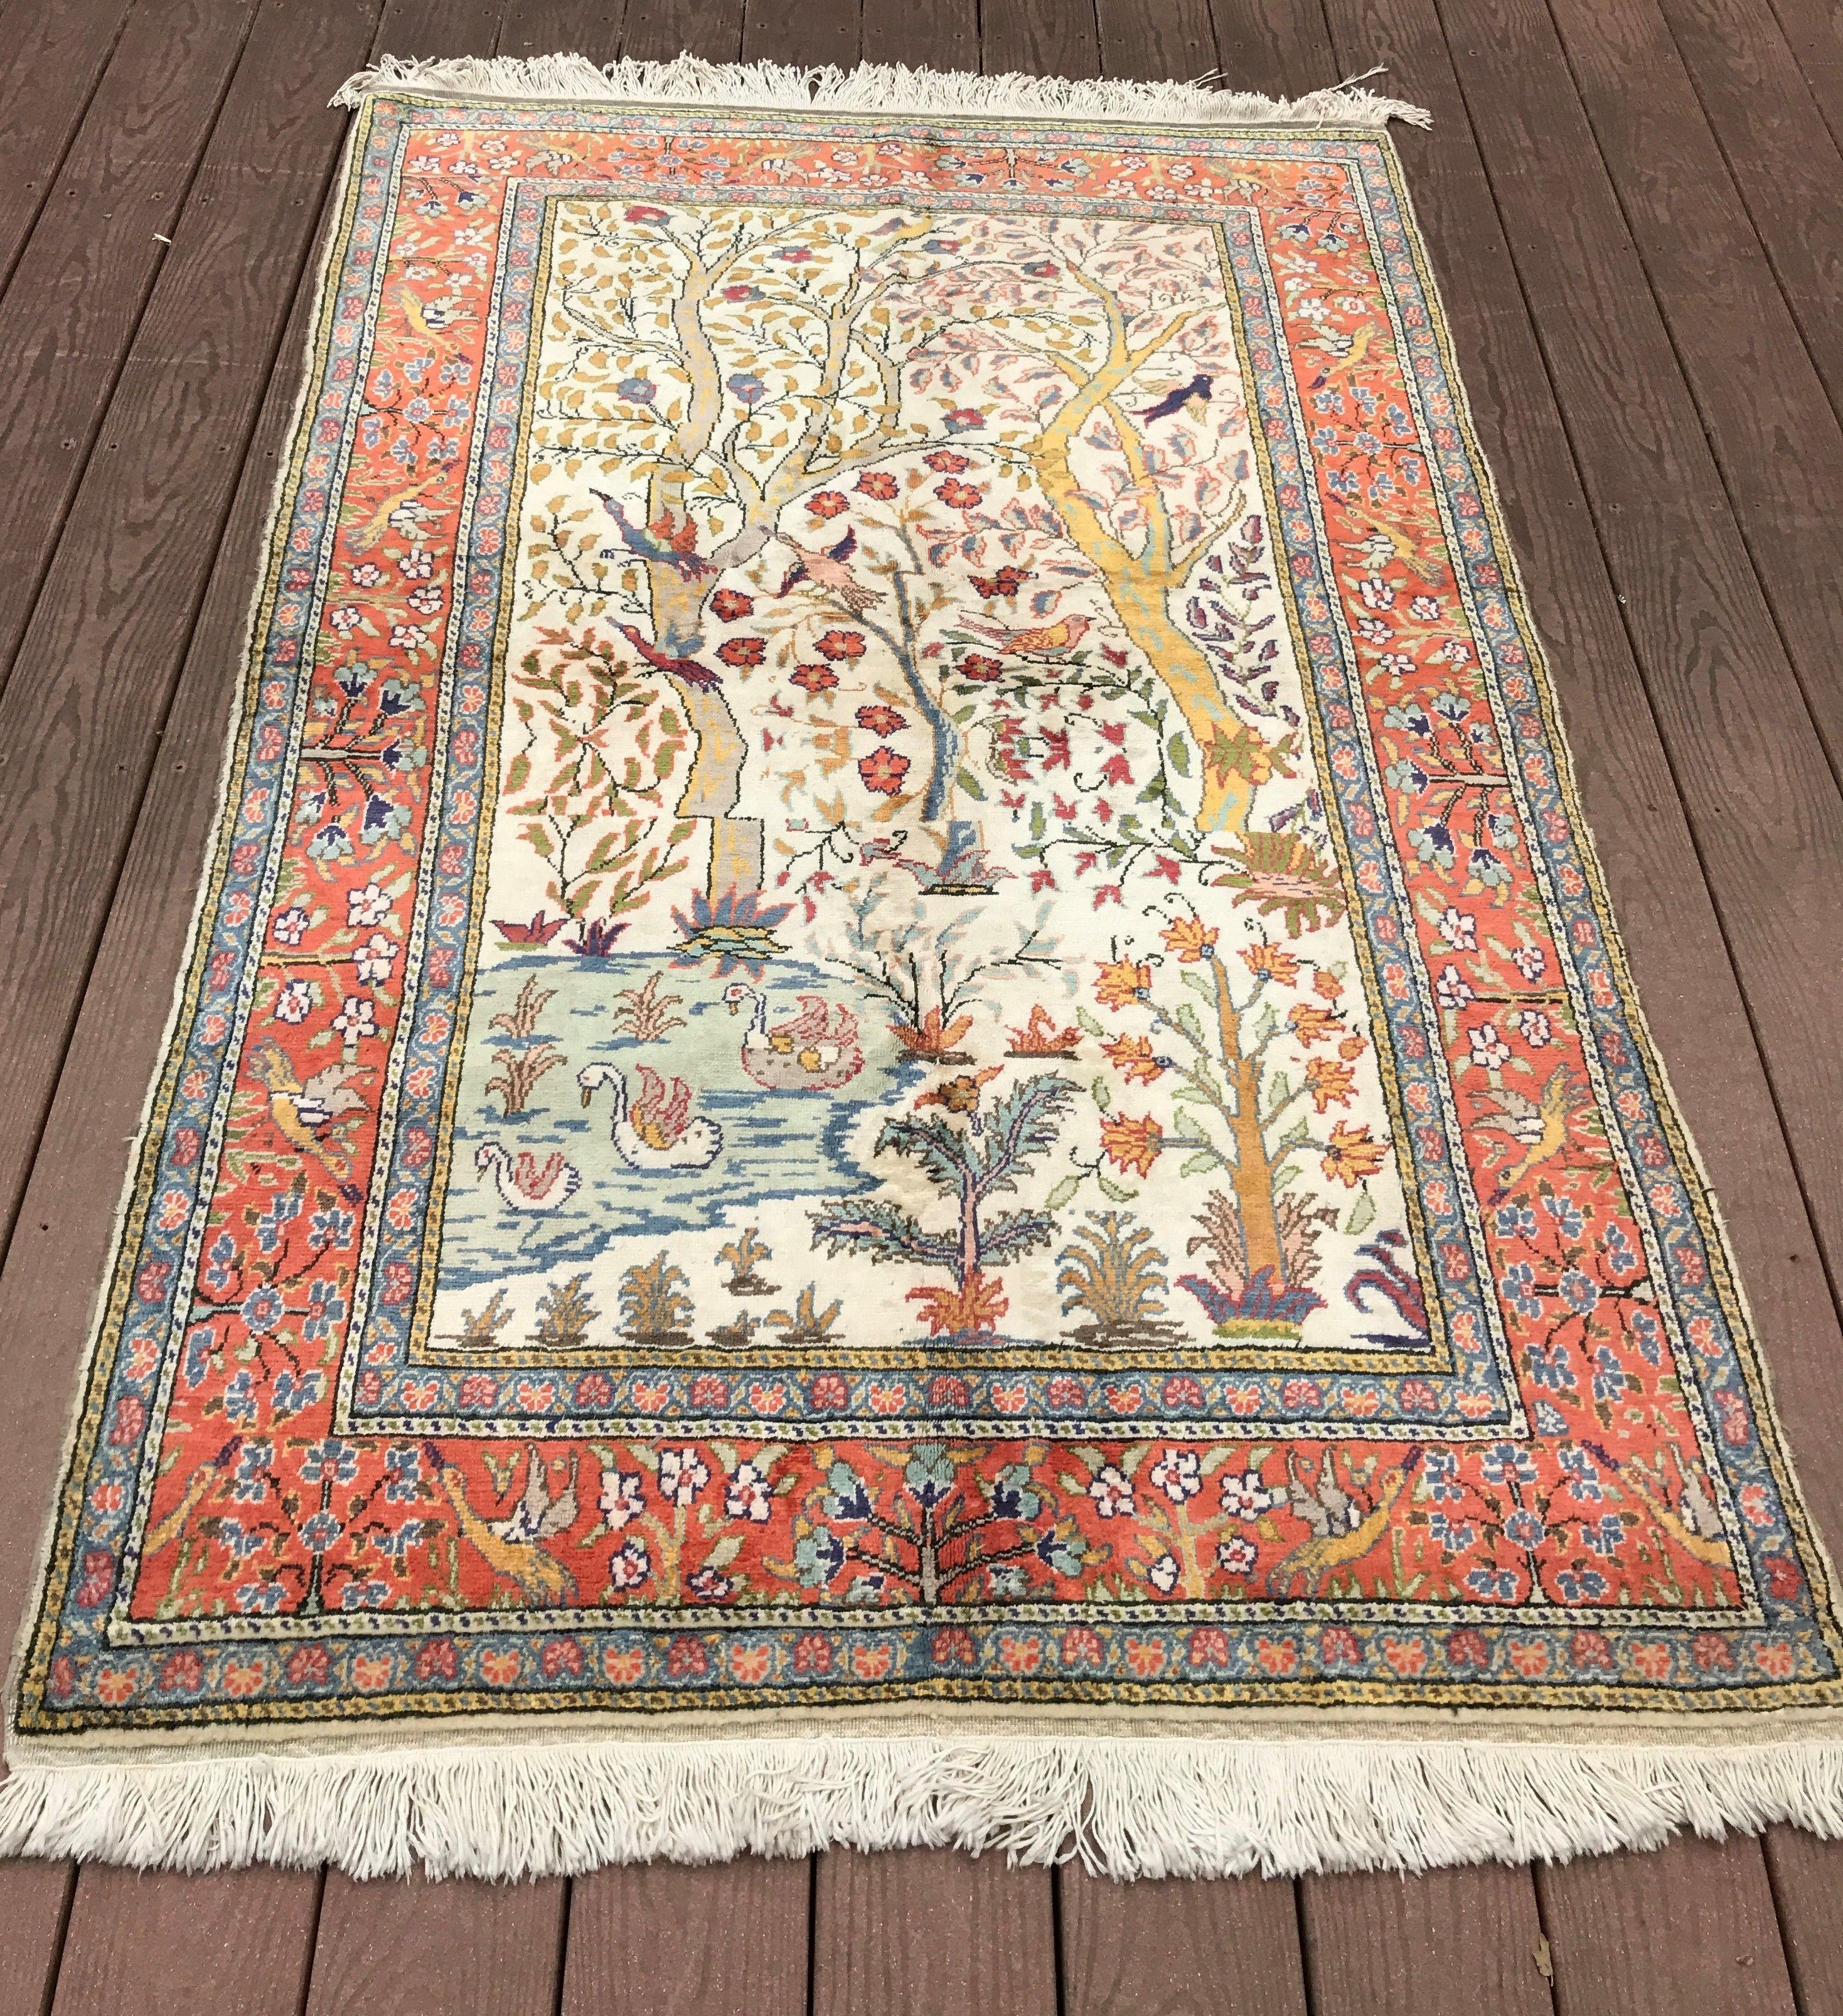 Rare Vintage Turkish Rug Hereke cotton Kaysari Bird Tapestry

3'10